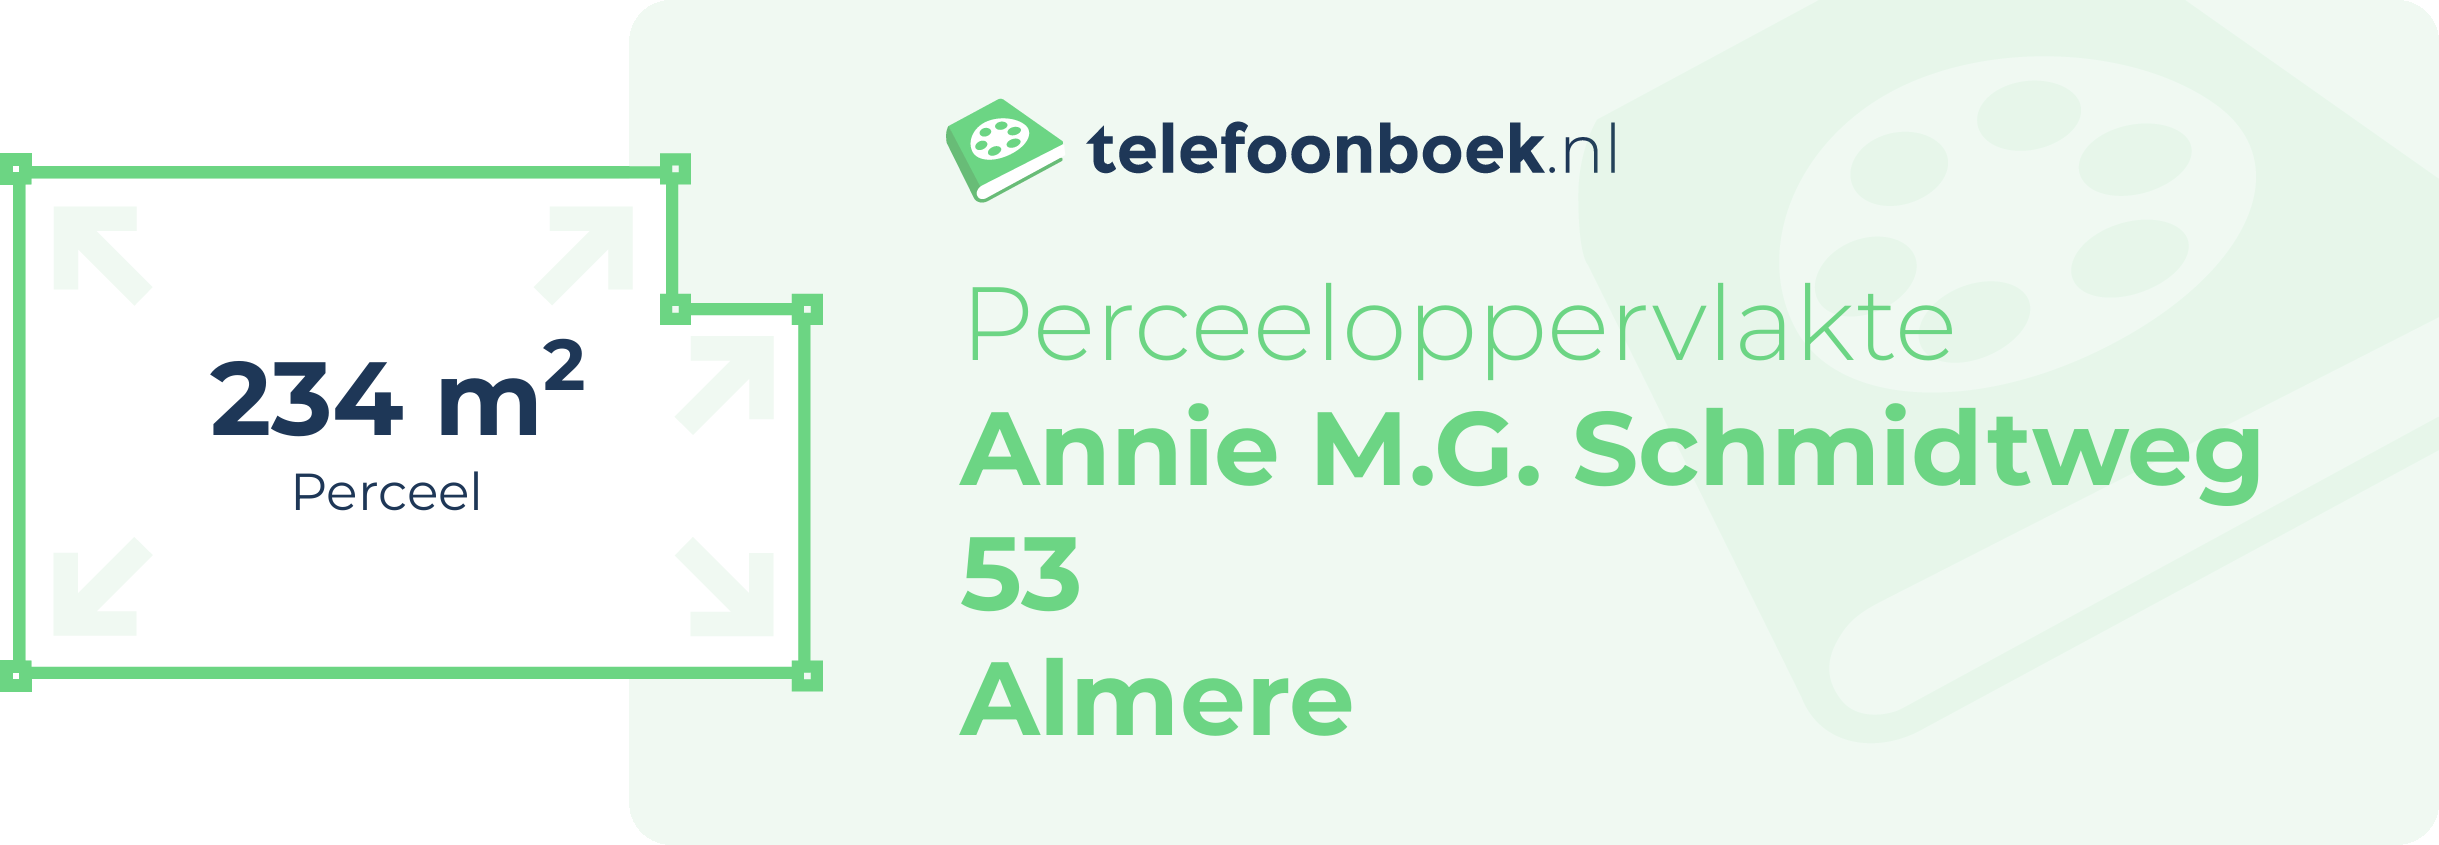 Perceeloppervlakte Annie M.G. Schmidtweg 53 Almere